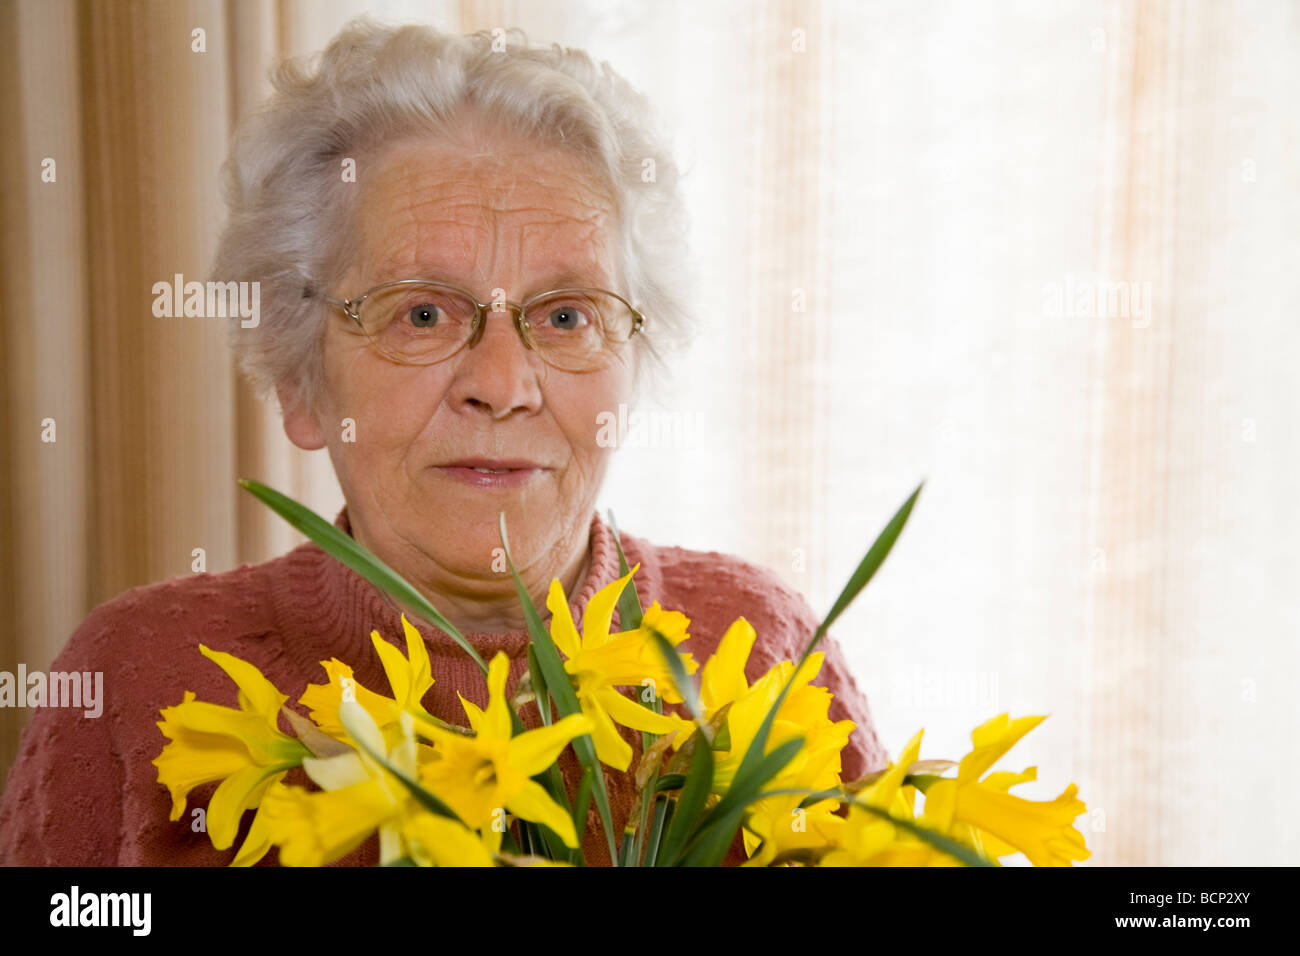 Frau in ihren Siebzigern steht im Wohnzimmer und hält einen Strauß Osterglocken Narcissus pseudonarcissus  Stock Photo